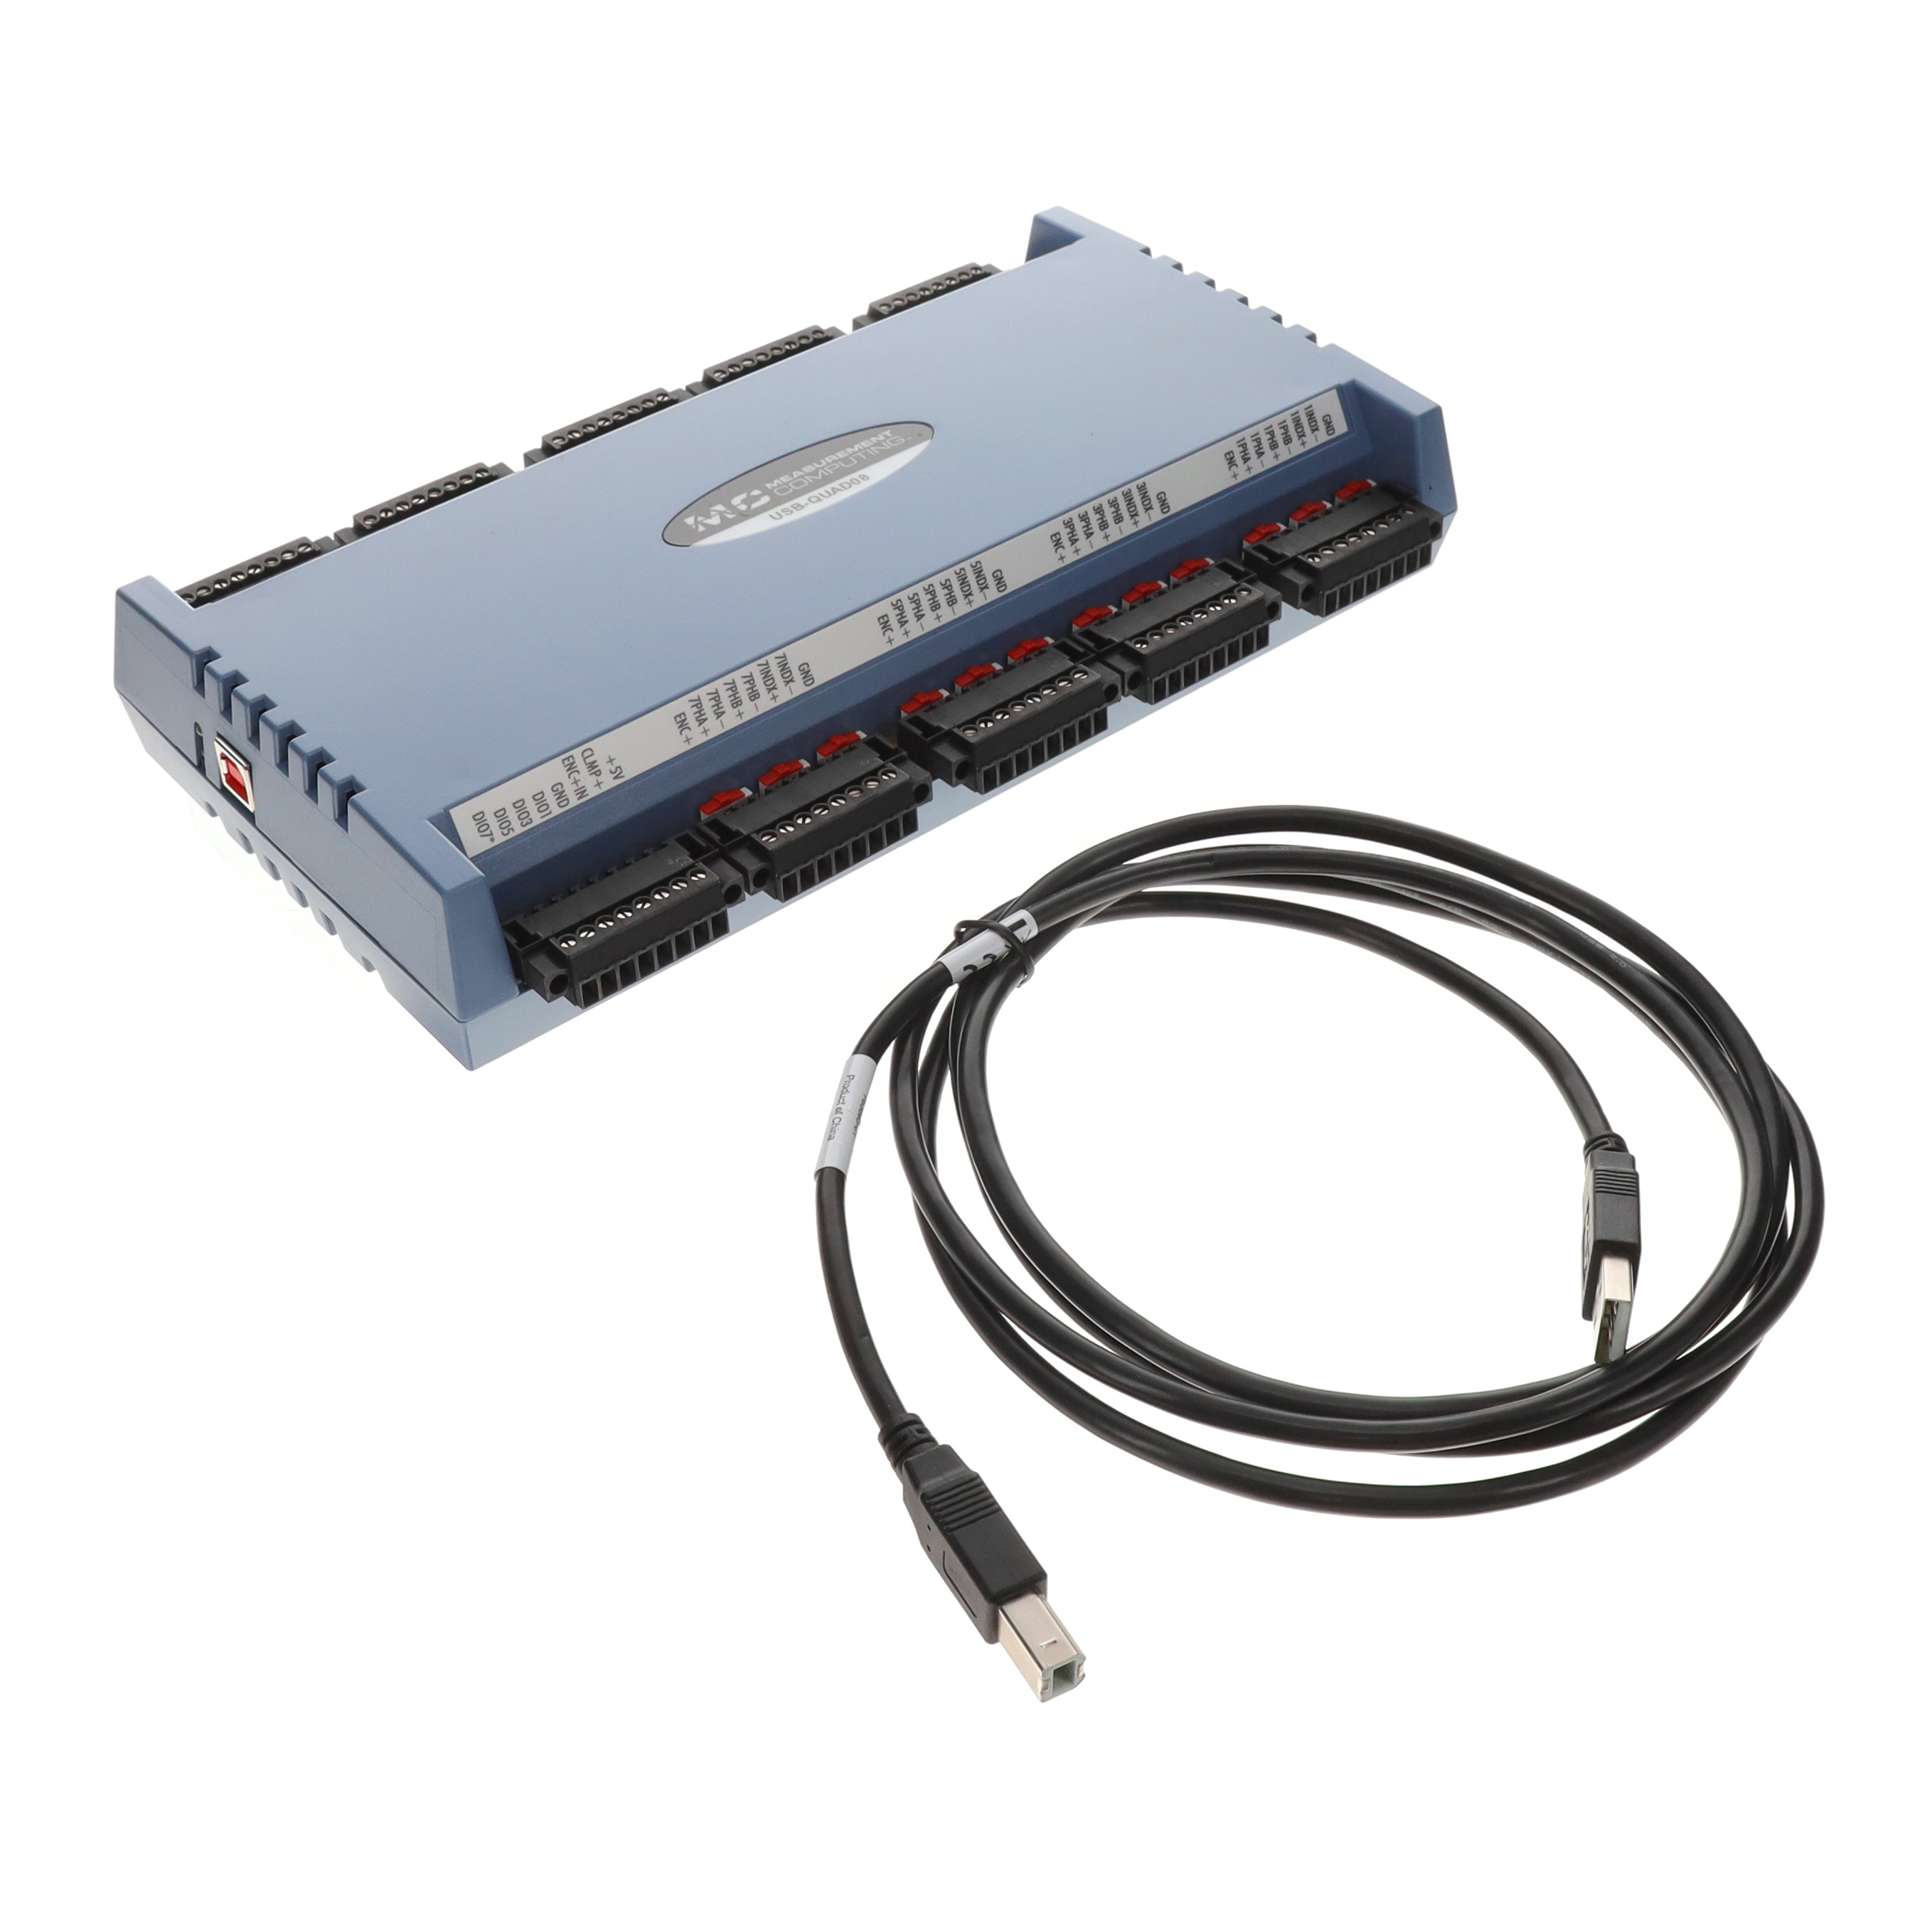 【6069-410-045】DAQ DEVICE MULTIFUNC I/O USB 2.0